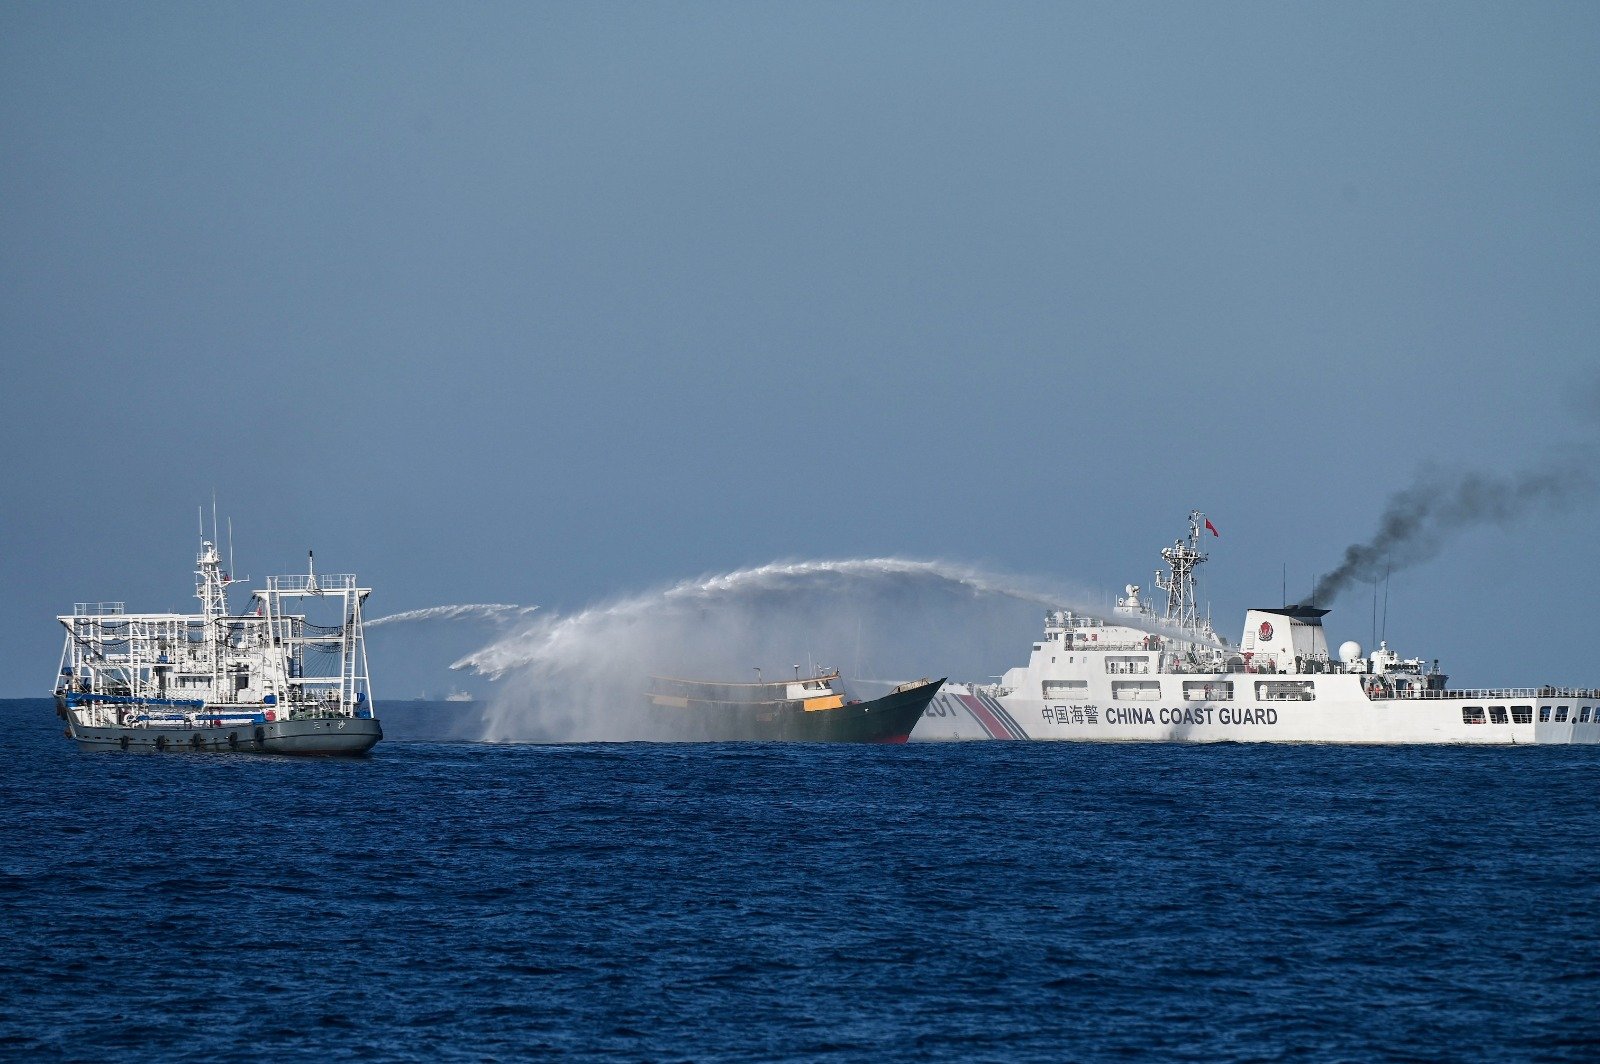 菲律宾当局表示，中国海警周二在南中国海仁爱礁附近朝菲国补给船发射水炮，至少导致4名船上人员受伤。（图取自法新社）